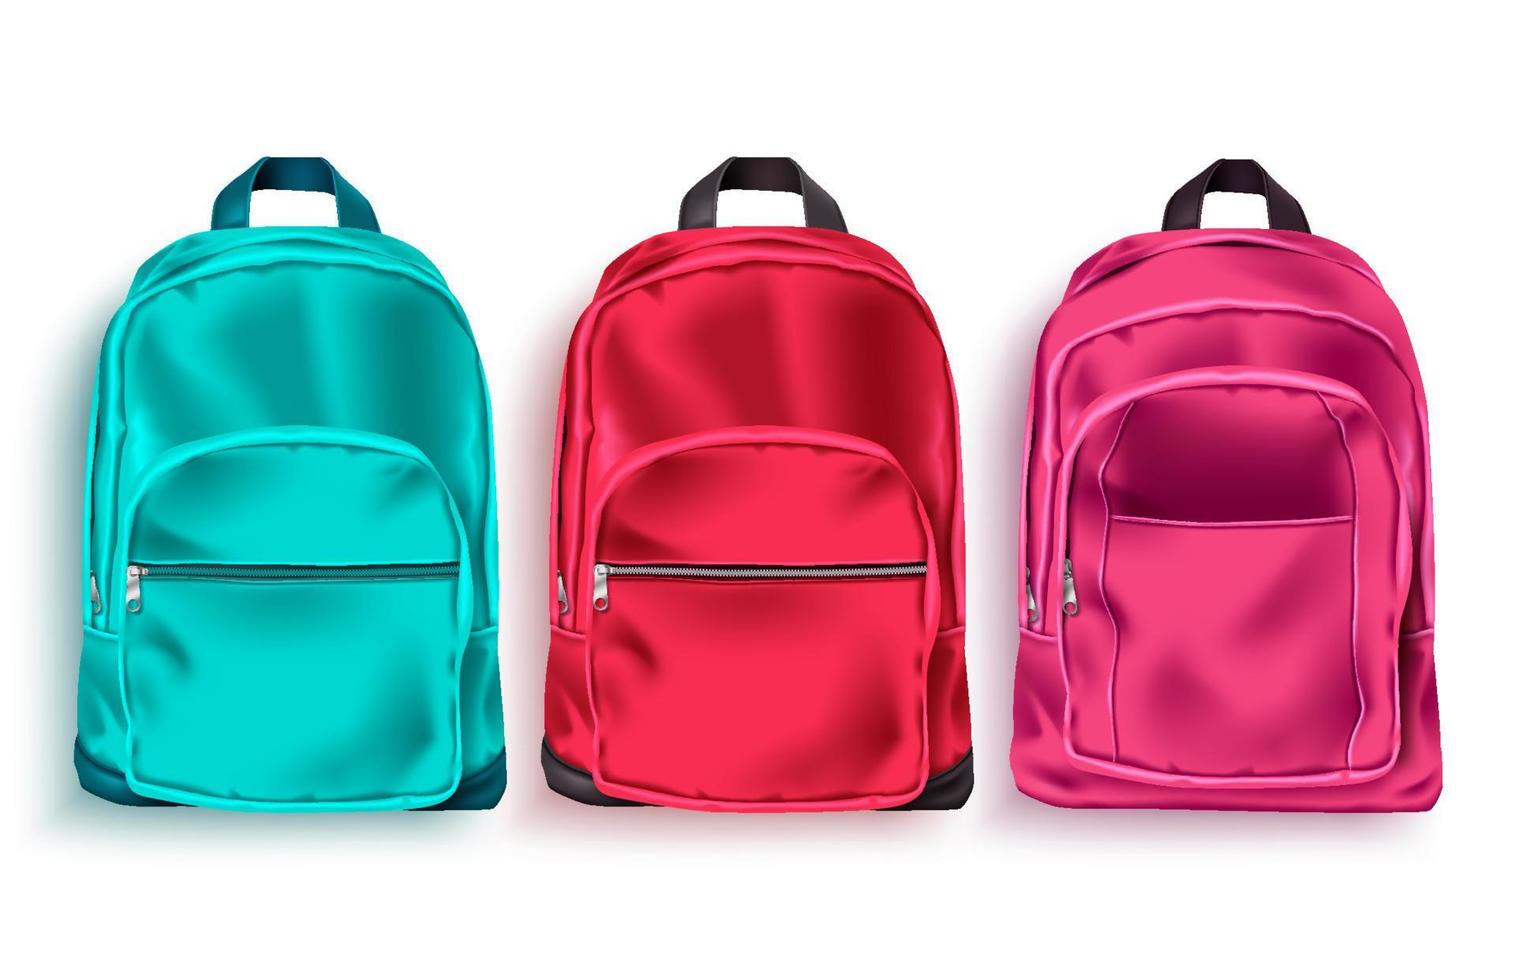 skolväska vektor set. skolryggsäck och bagage 3d-samling i grön, röd och rosa färg för utbildnings- eller reseelement isolerade i vit bakgrund. vektor illustration